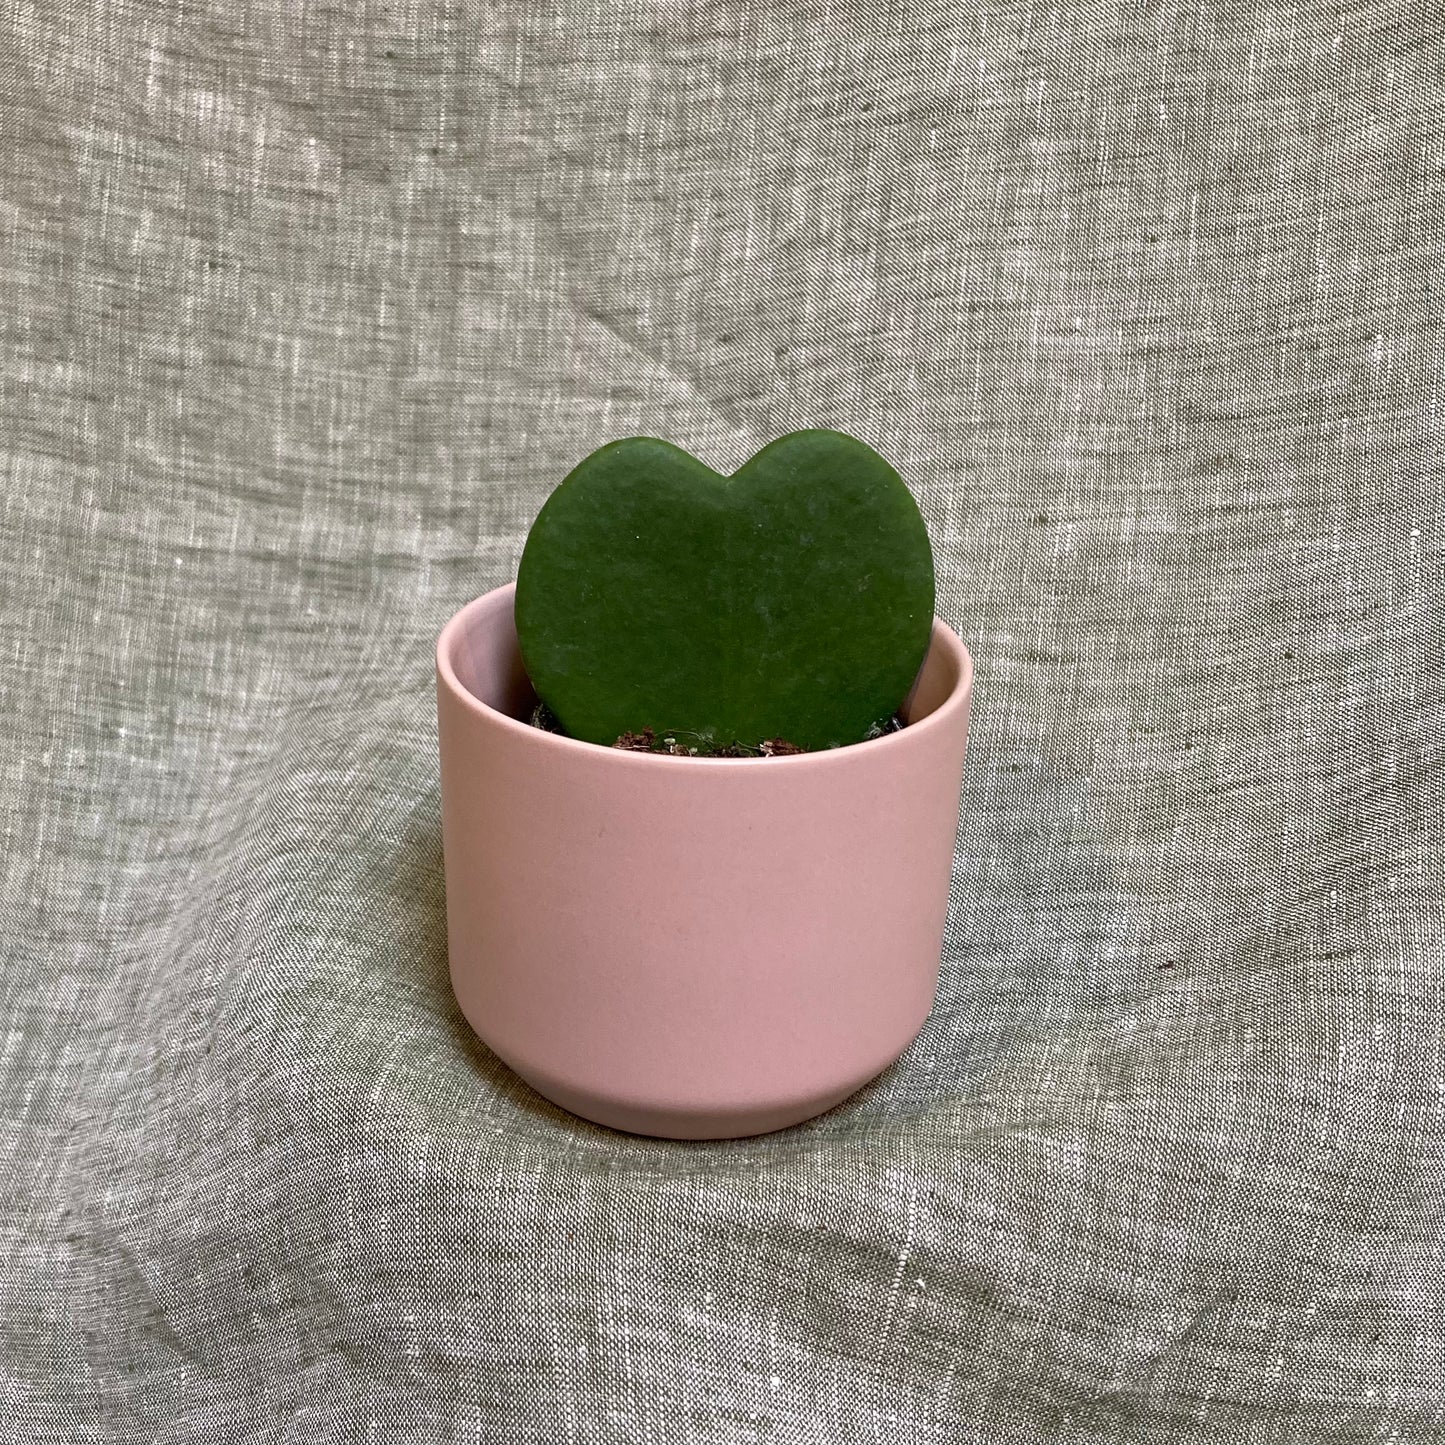 Hoya Kerii (Heart) 2.5"